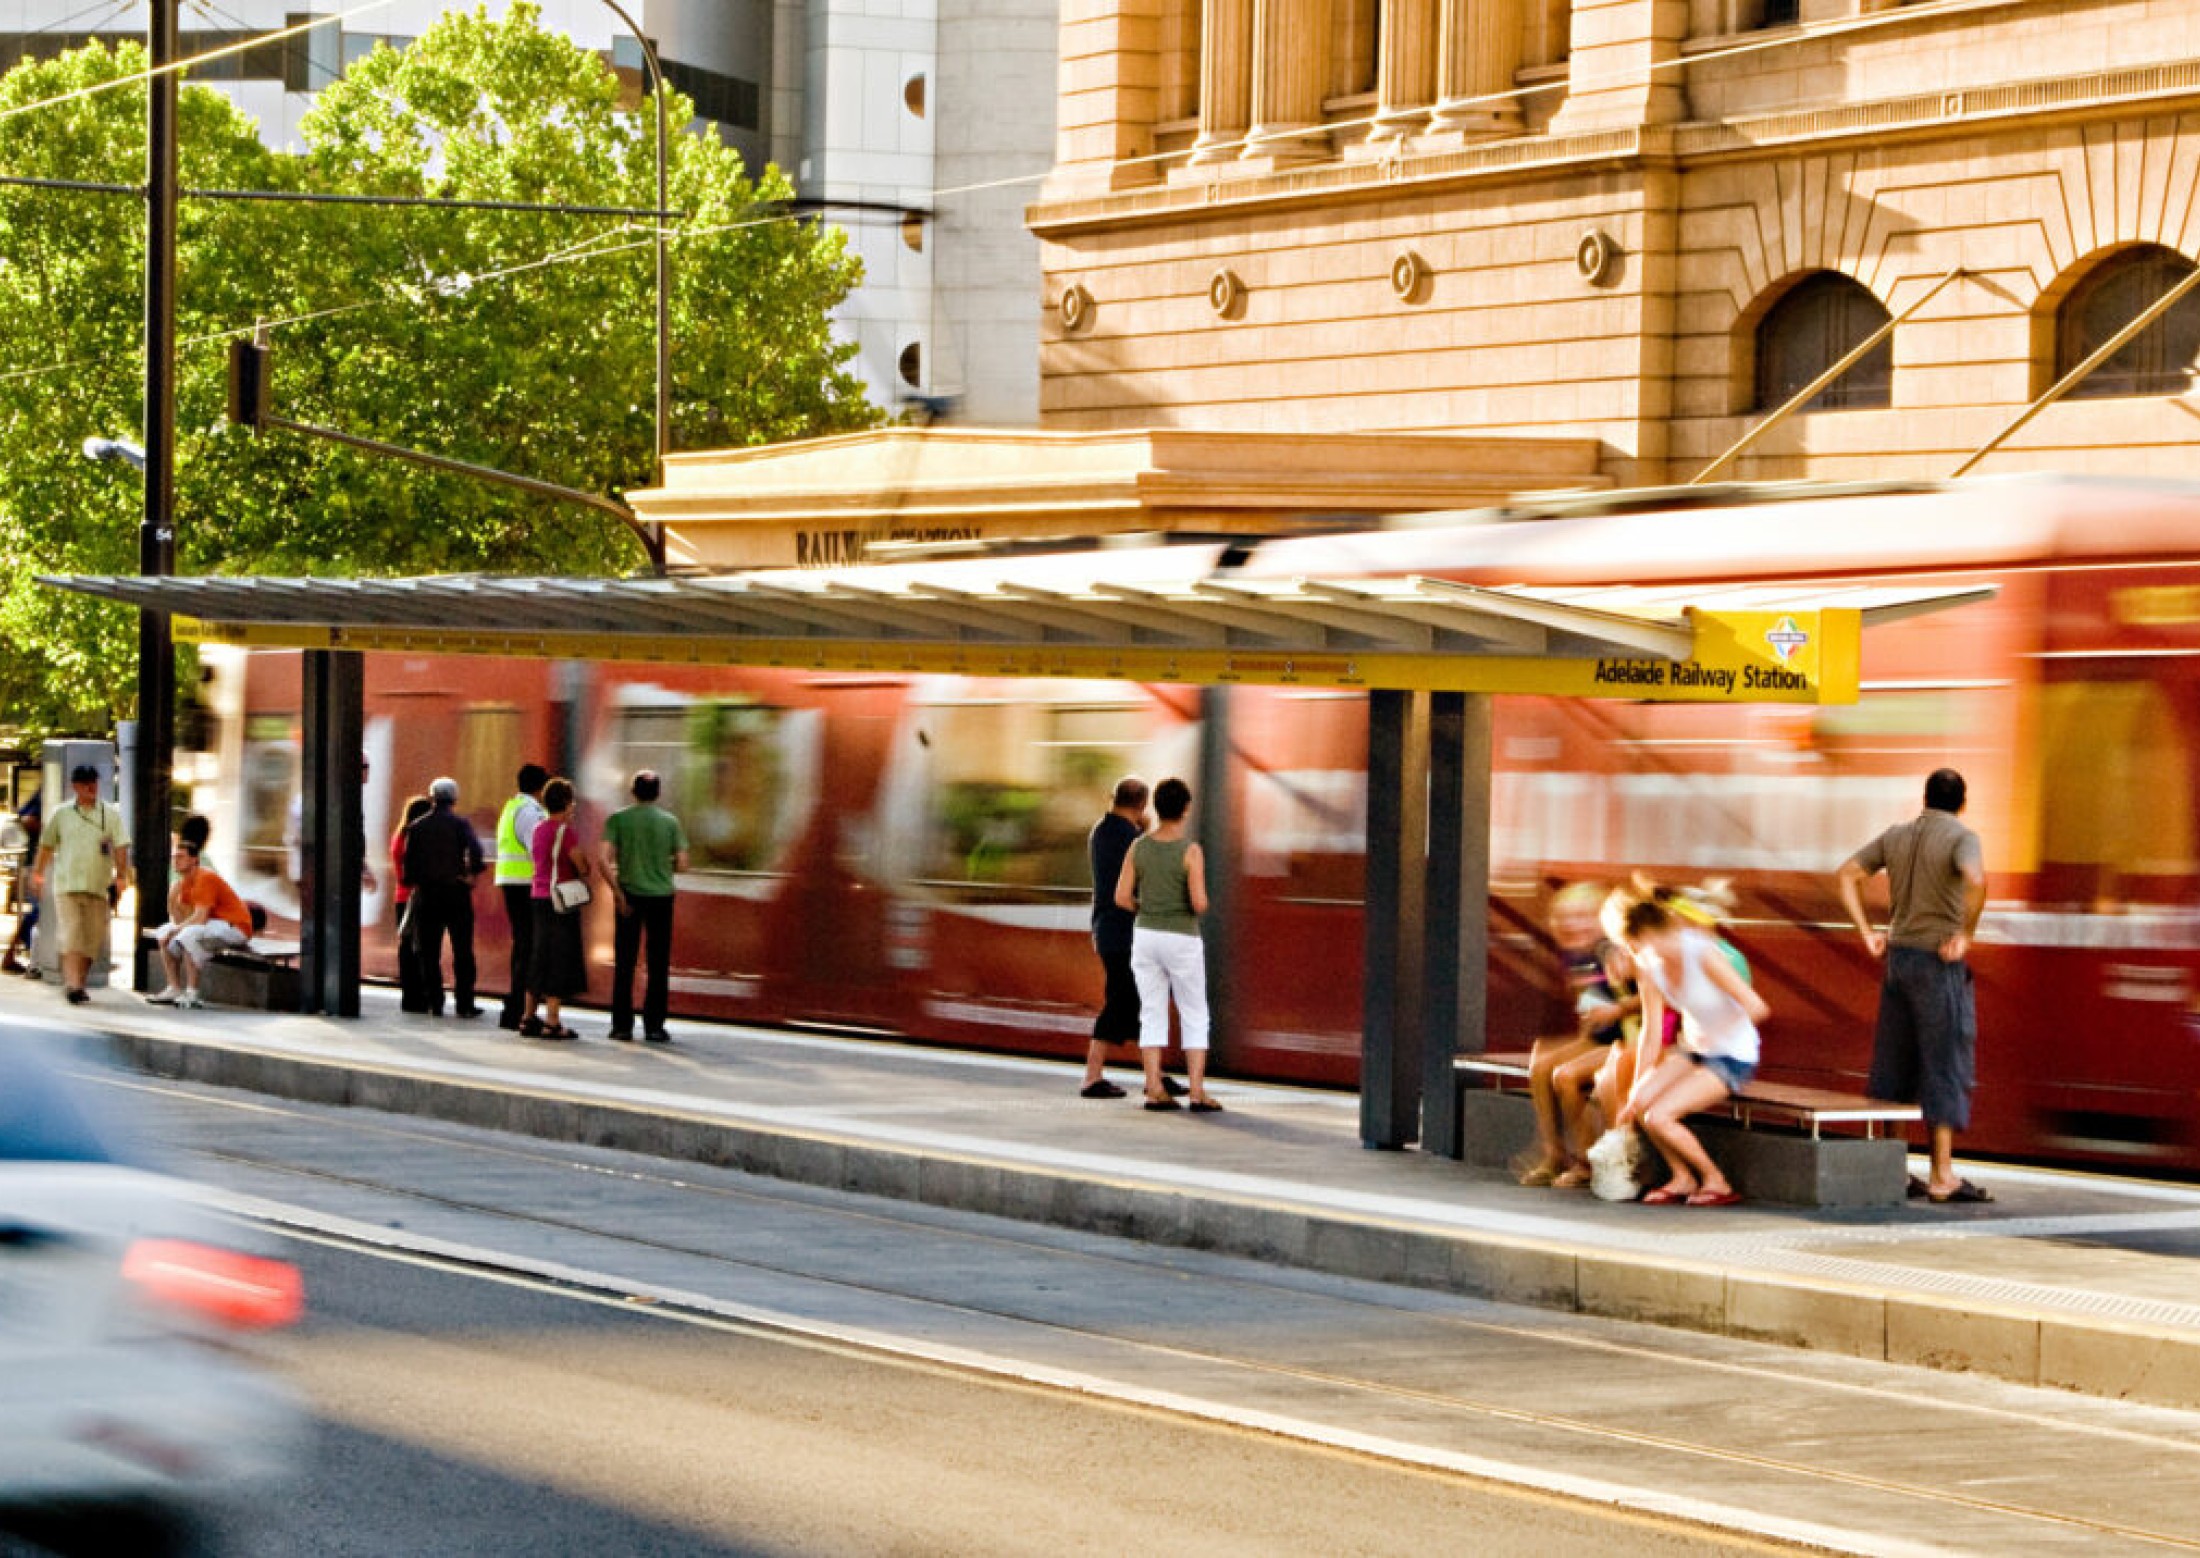 Adelaide Tram Shelter